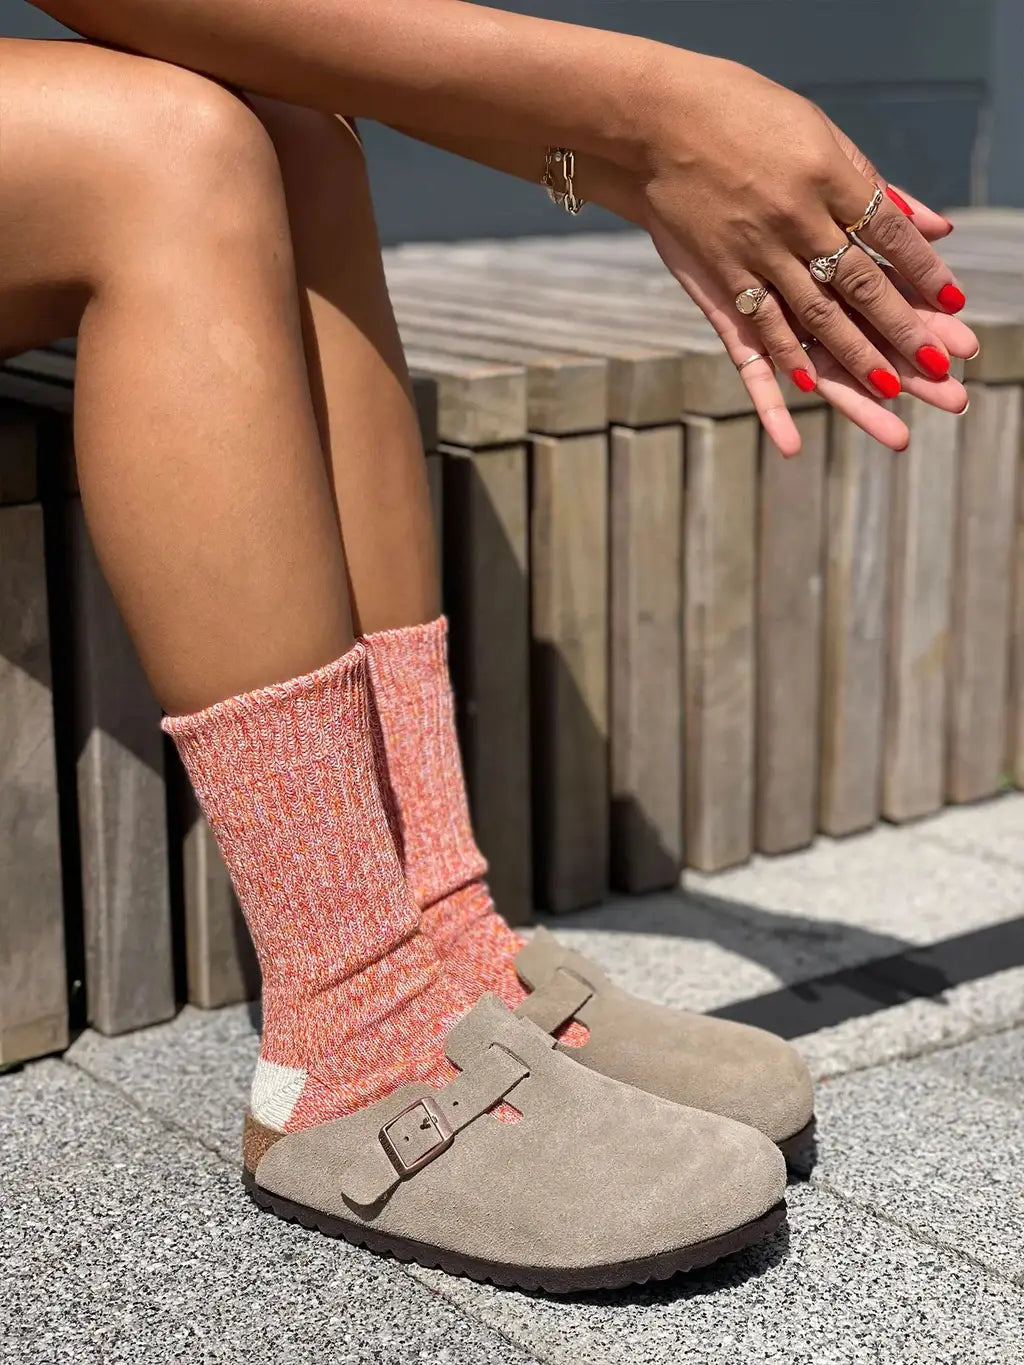 The JoJo | Women's Quarter Length Socks by Ivy Ellis Socks 